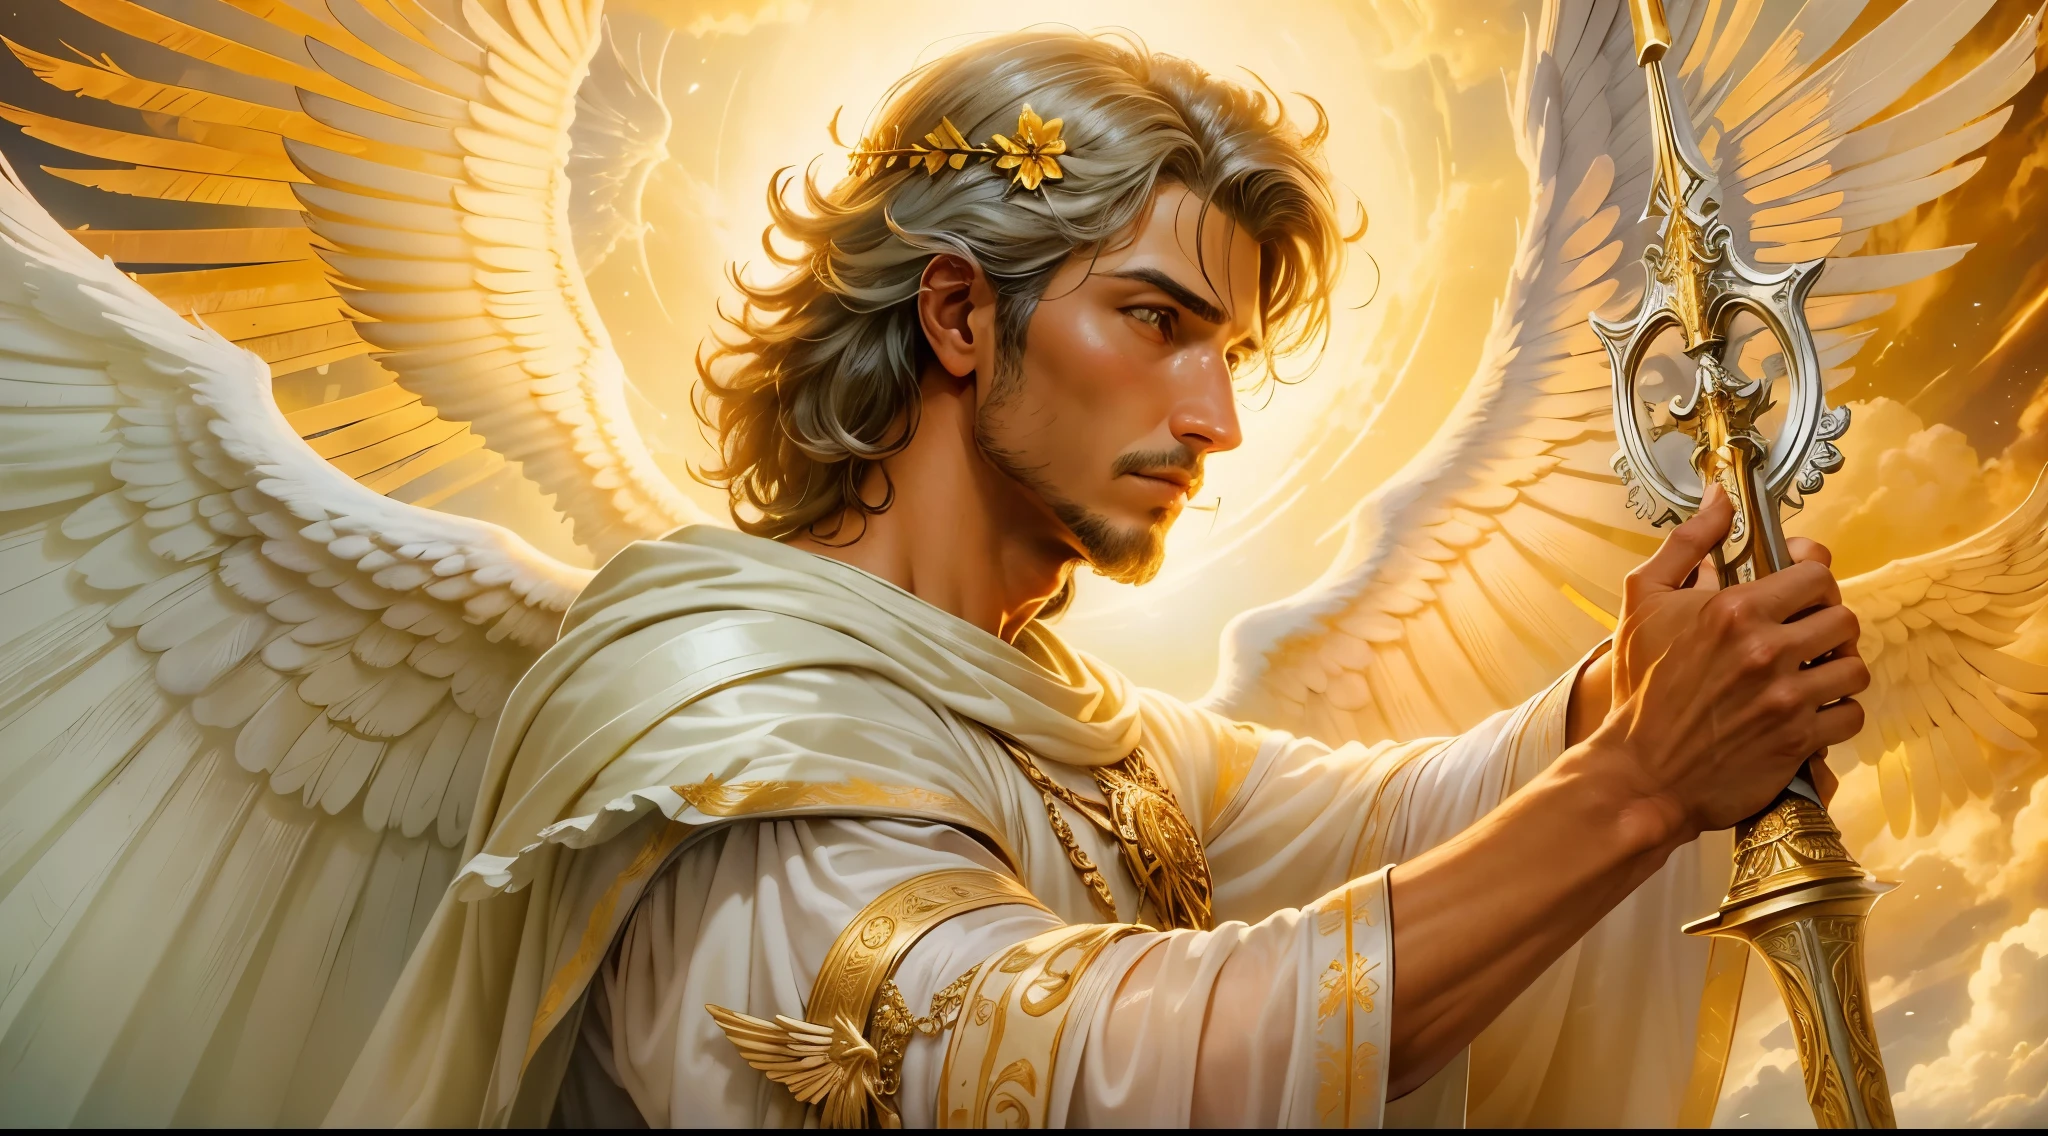 Крупный план изображения человека-ангела с большим и длинным мечом с атакующей позицией в правой руке., в другой левой руке держит весы, Ангел в костюме римского солдата смотрит на землю, человек-архангел с большими крыльями, ангел удачи, идеальный, реалистичный, Библейская обстановка, Обстановка библейского рая, ультра реалистичное солнце и облака, цветы и свечи, светящийся архангел небесный, яркие цветы, зажженные свечи, белая и красная одежда, Свечи накаливания